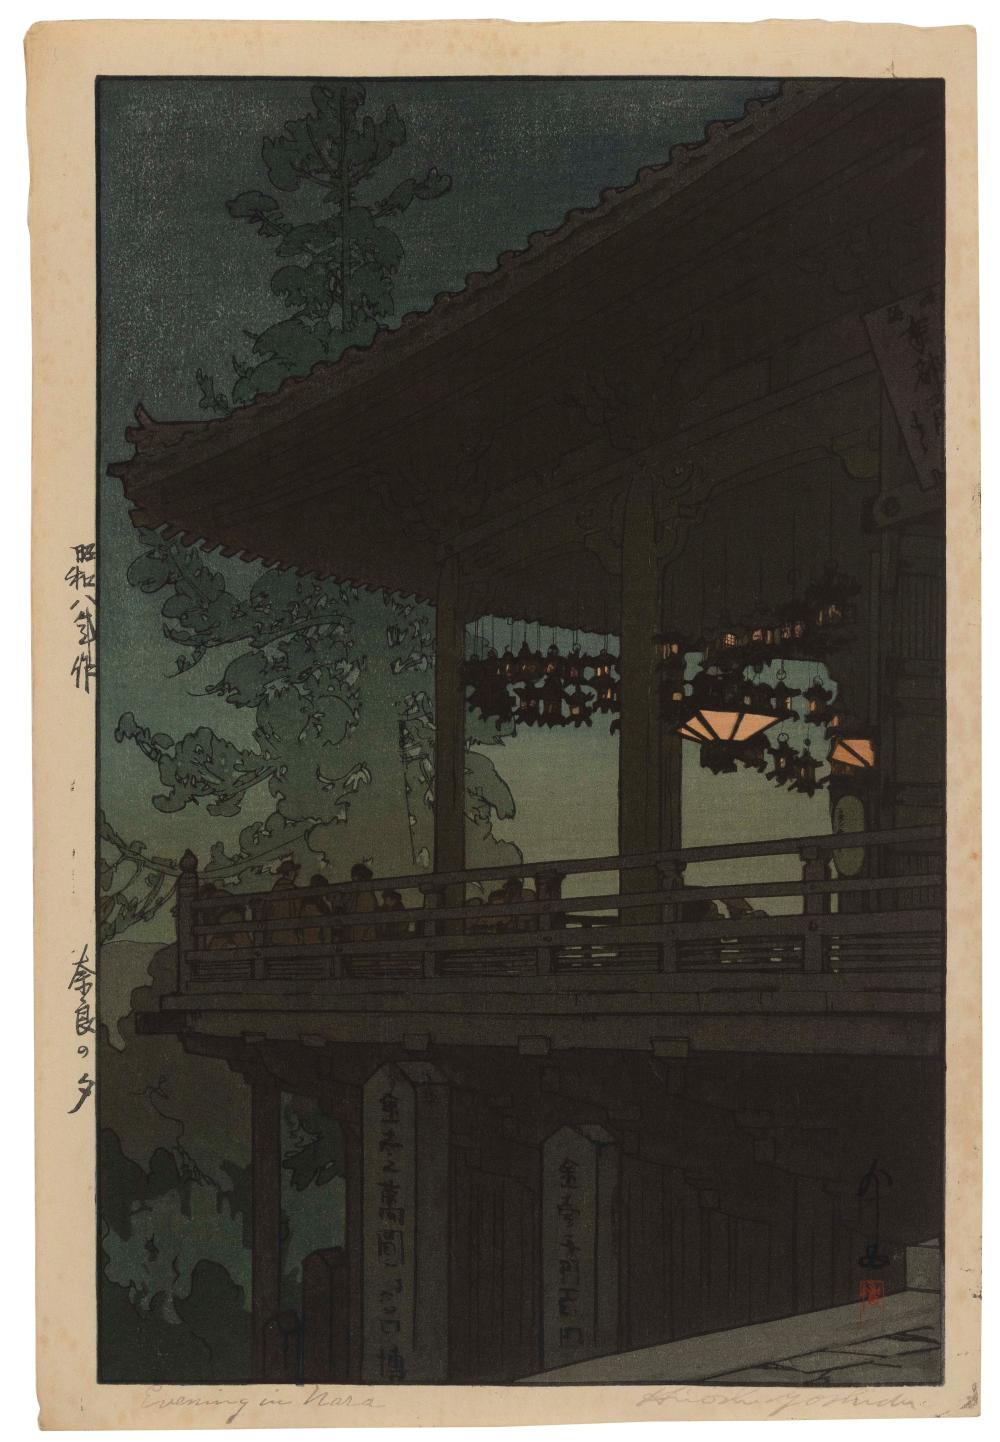 HIROSHI YOSHIDA JAPAN 1876 1950  3c7def